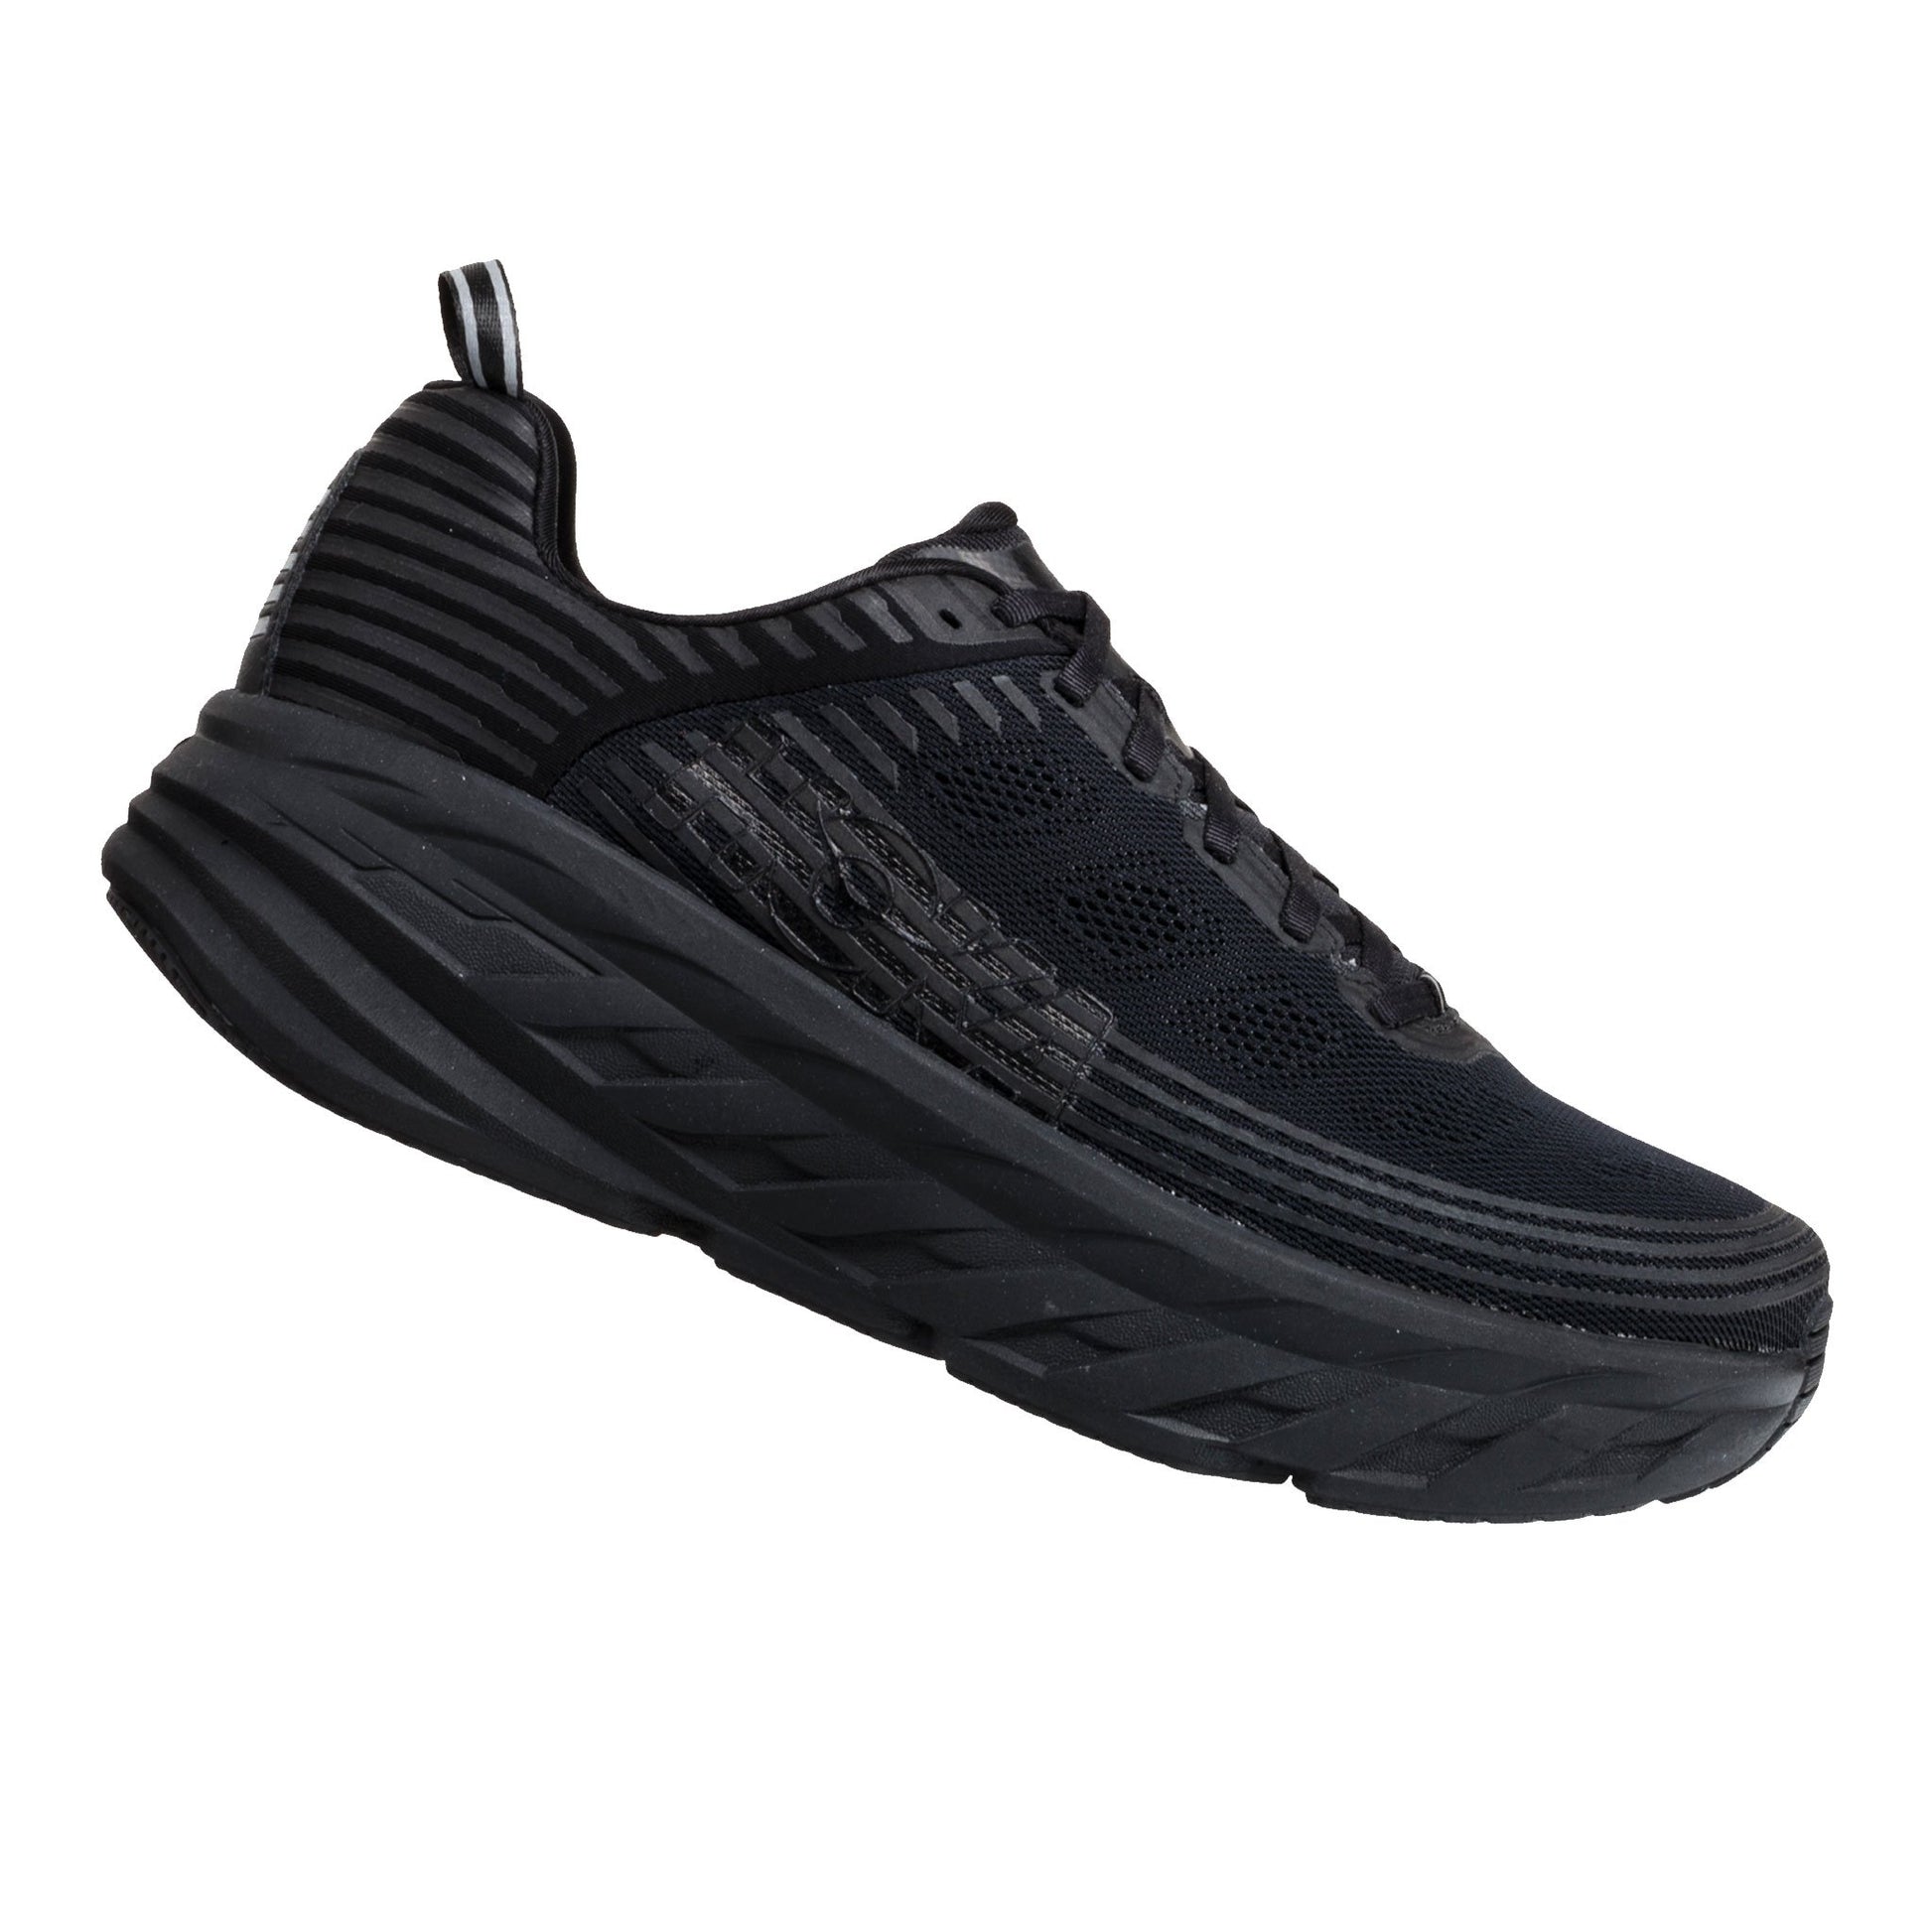 hoka one one shoes online bondi 6 black runners footwear sneakers